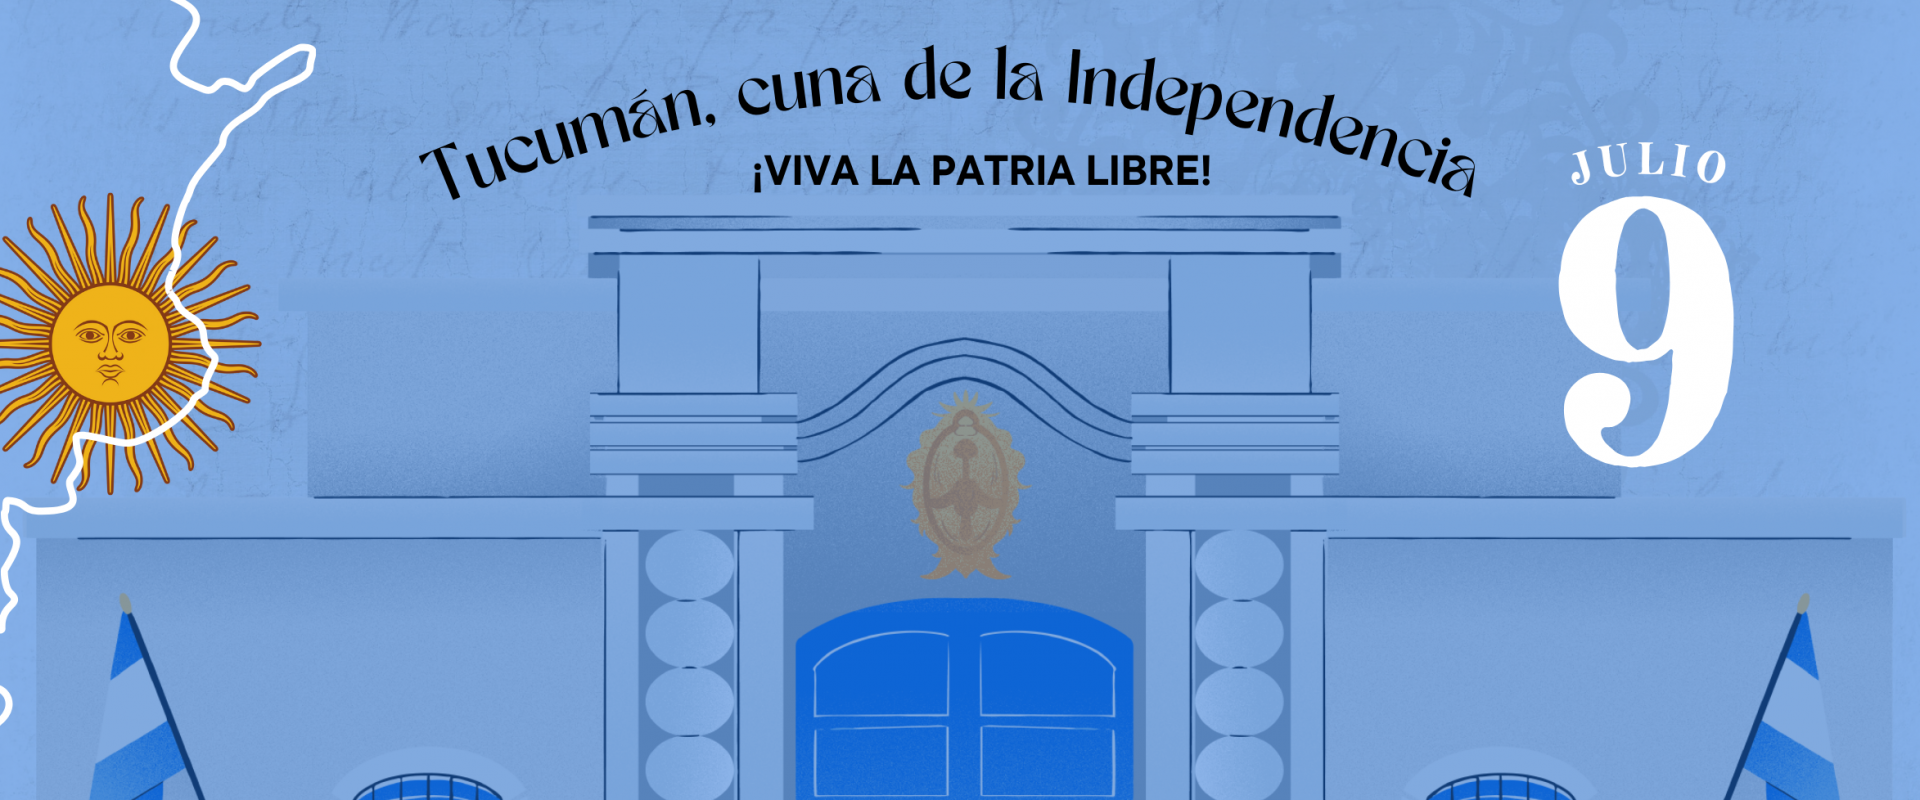 Instagram Story Día de la Independencia Argentina Ilustrado Celeste (2346 x 1273 px) (1)